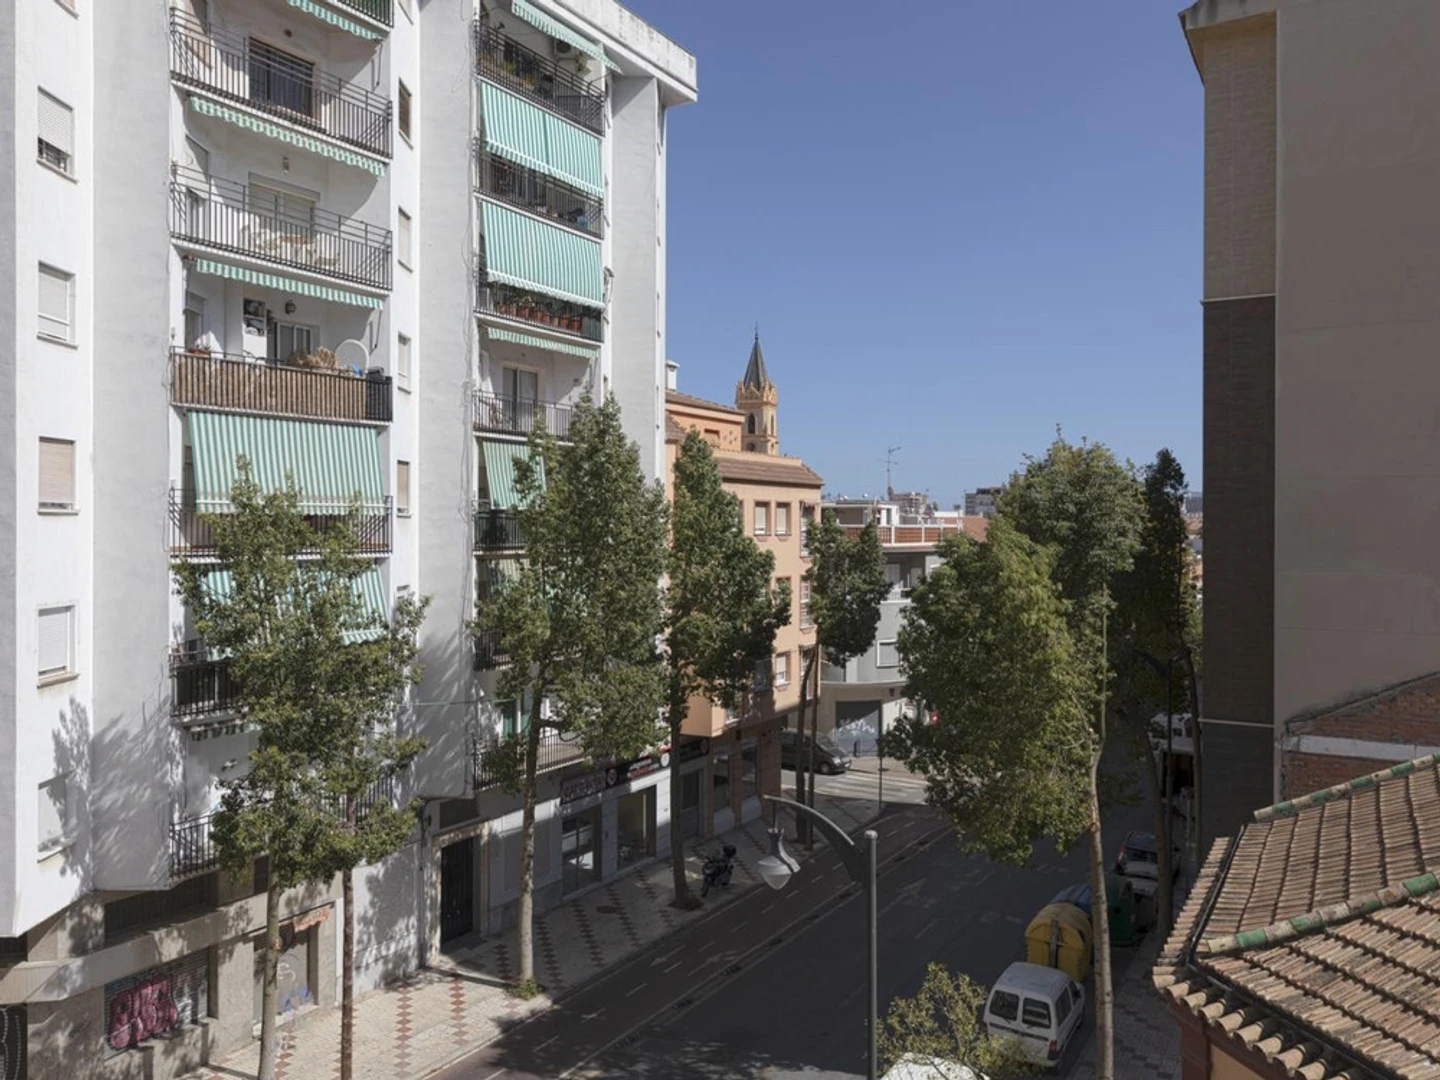 Alojamiento situado en el centro de Málaga